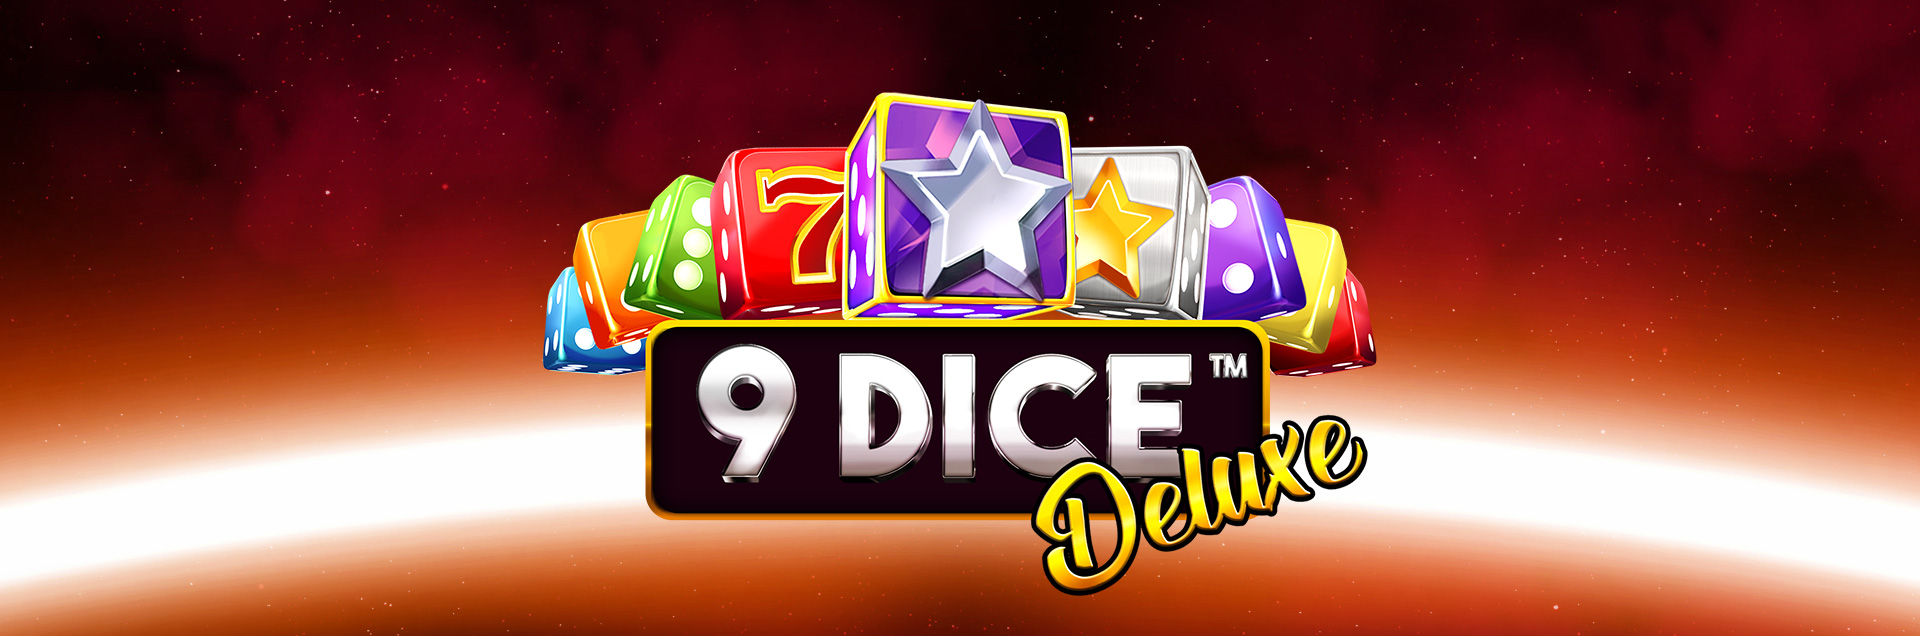 9Dice Deluxe header games